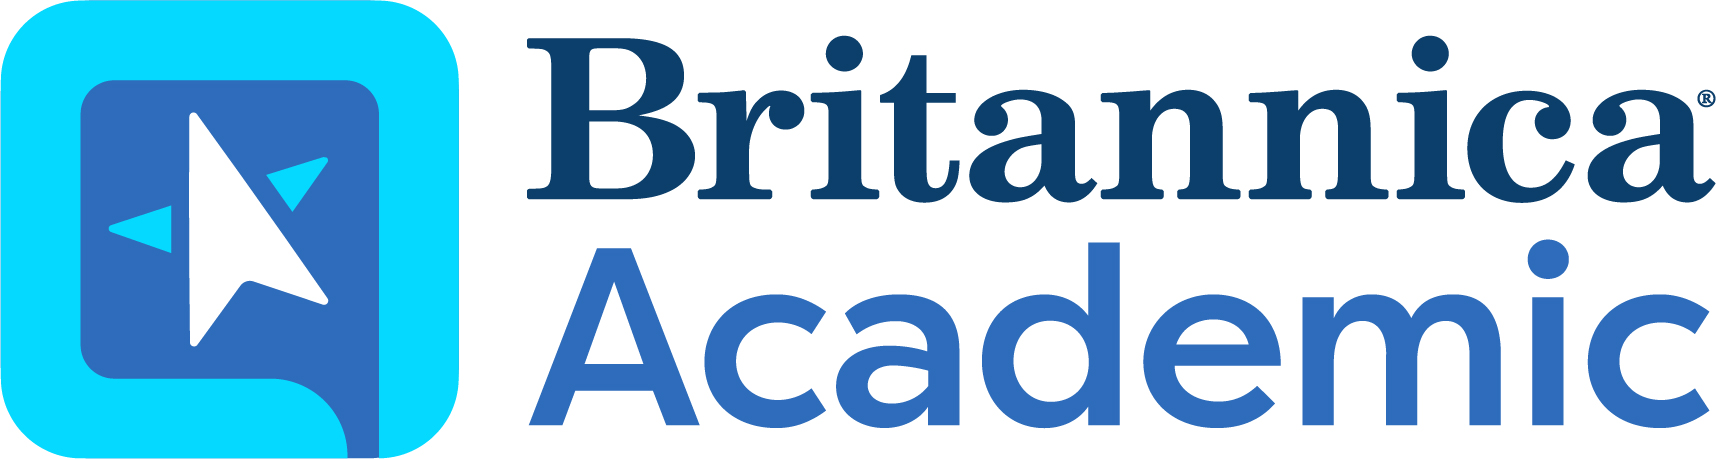 Britannica Academic